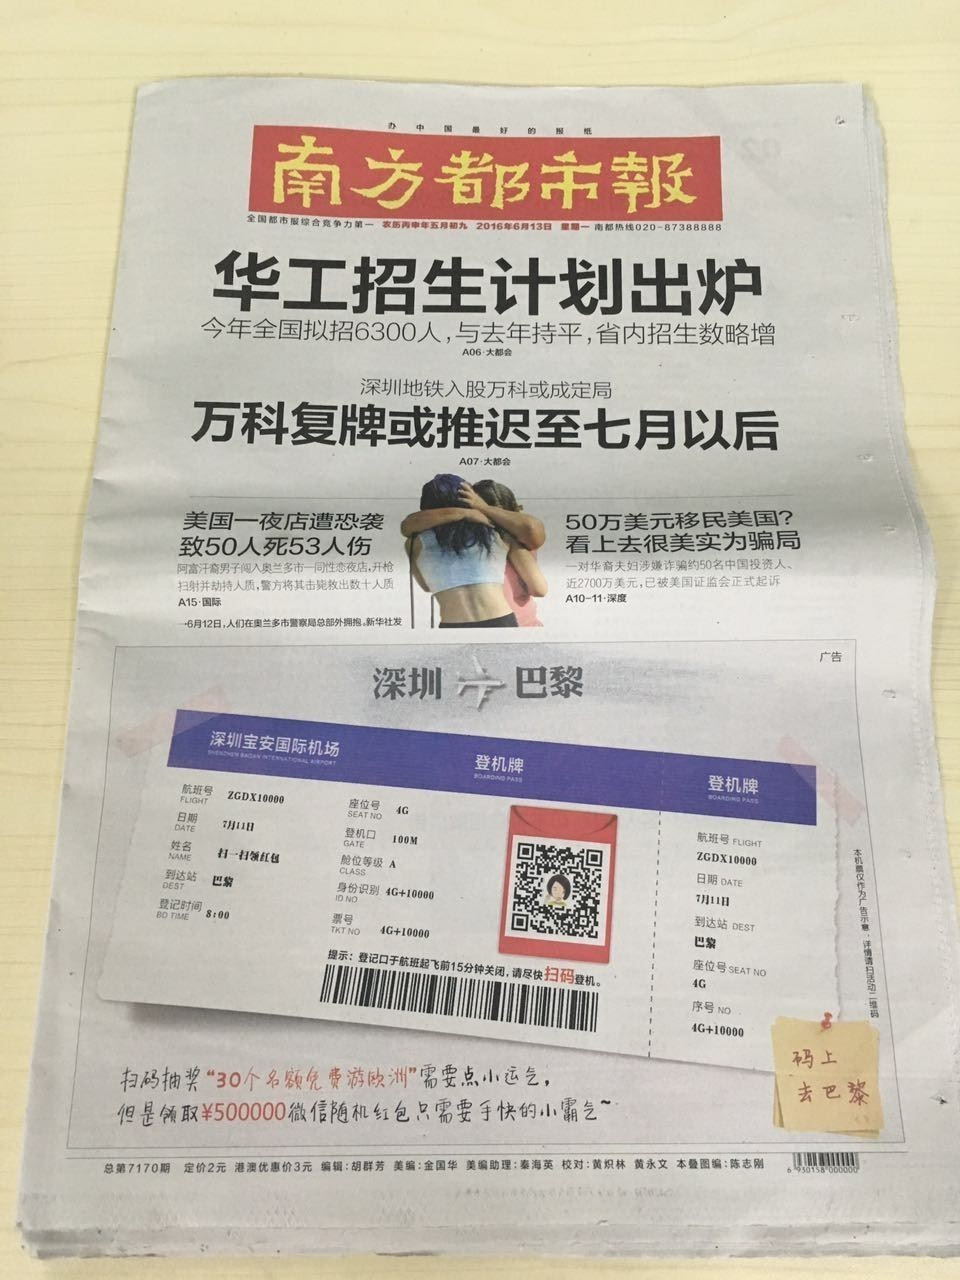 任性广告新高度:南方都市报和深圳都市报的机